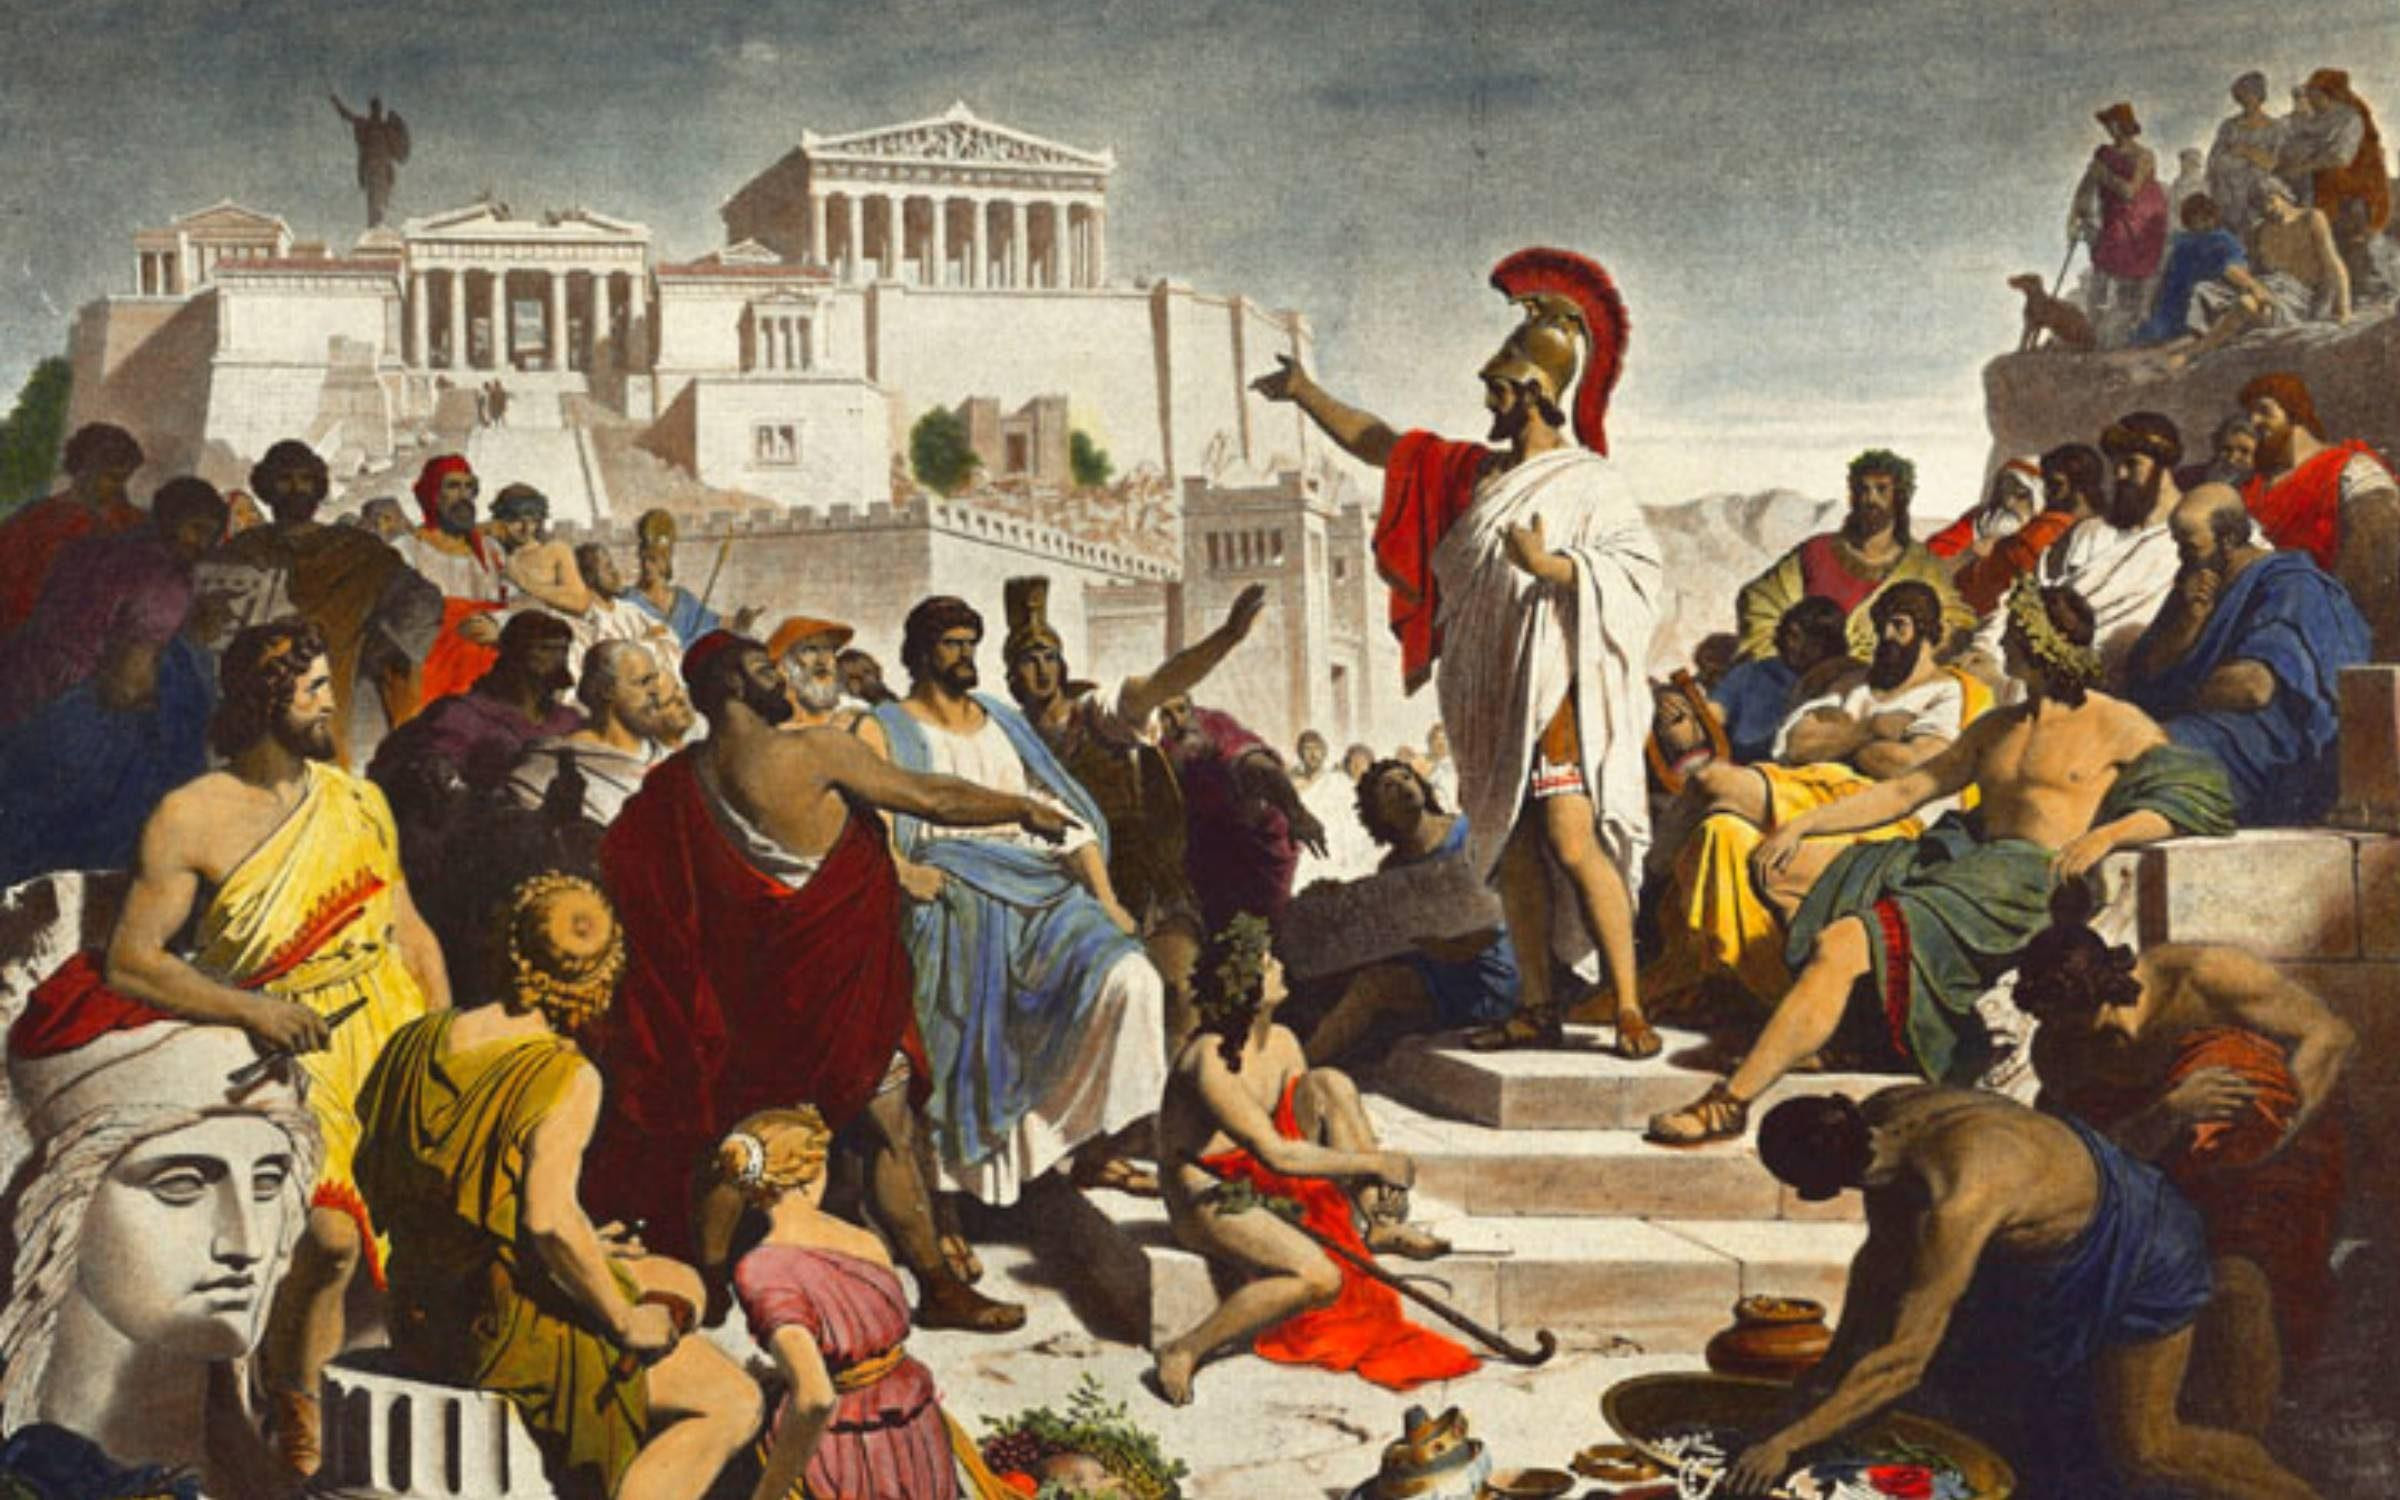 'Discurso fúnebre de Pericles en Atenas' (1877), una obra de Philipp von Foltz. La Grecia de las Pausanias